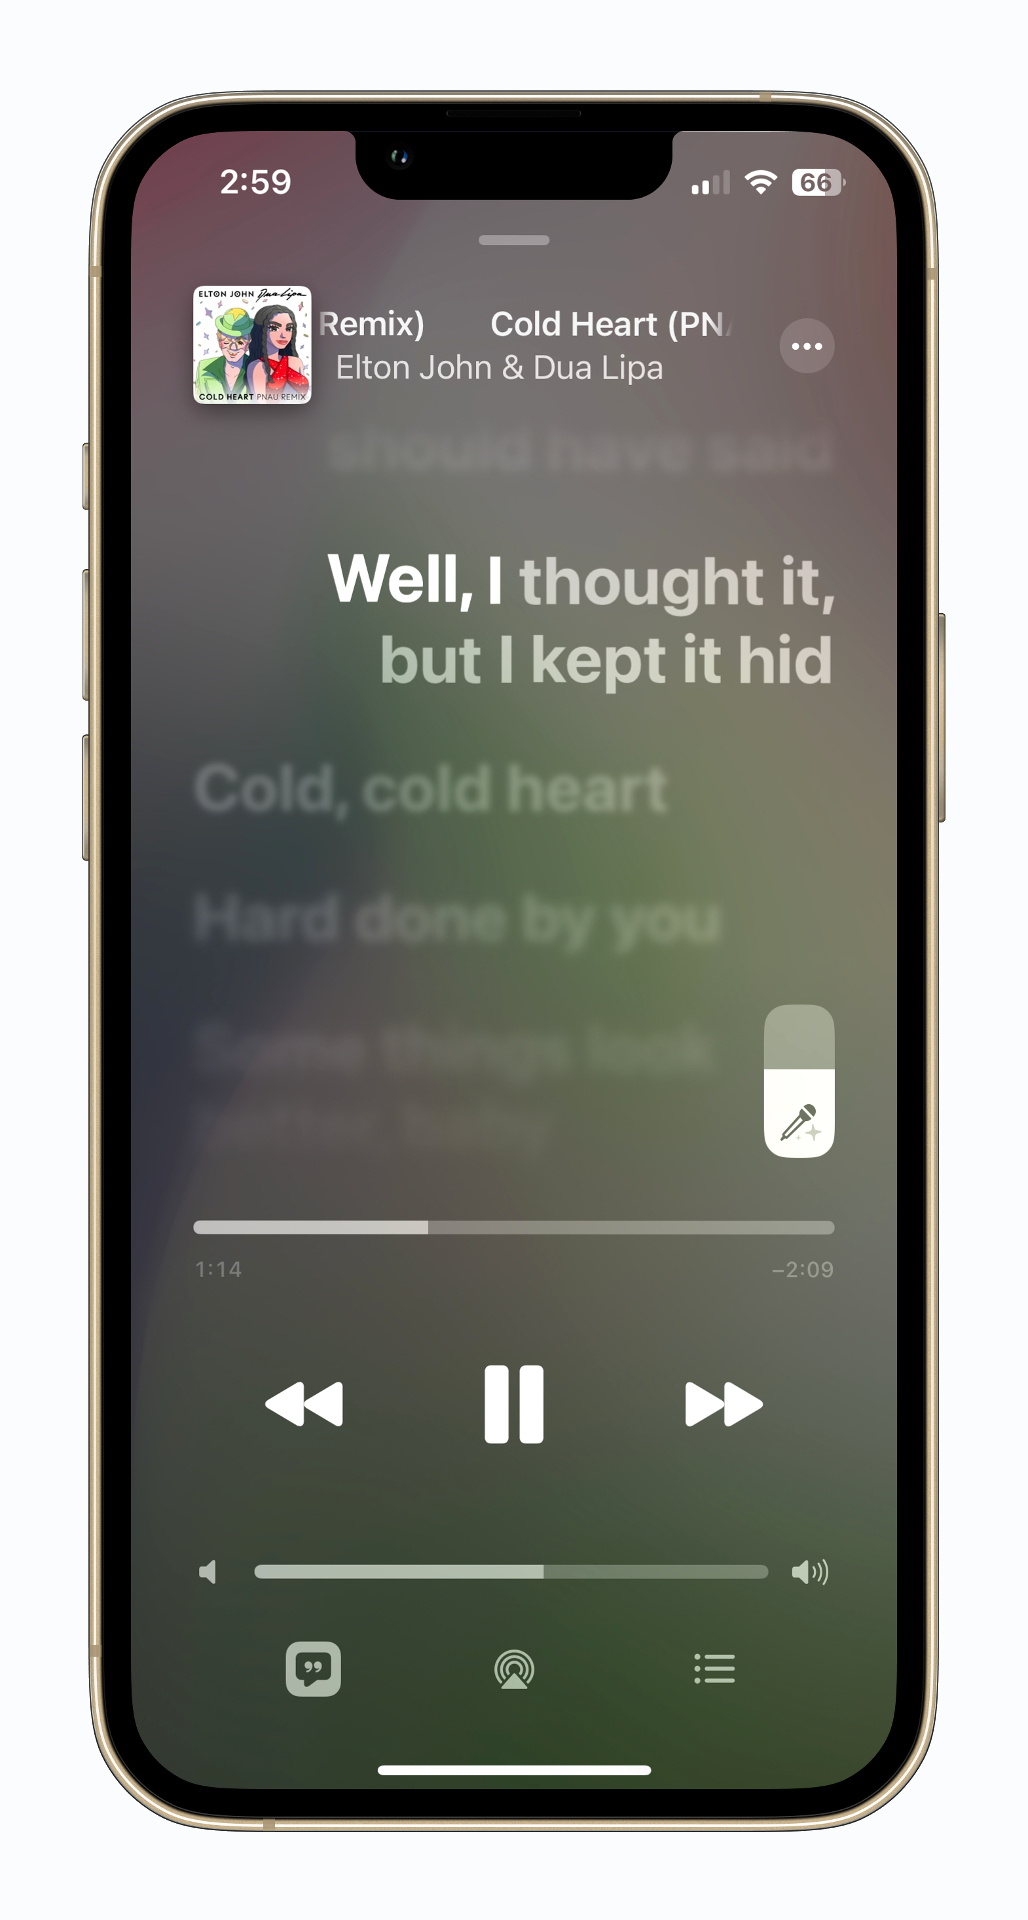 نمونه ای از اشعار آهنگ دوئت Apple Music Sing روی صفحه نمایش.